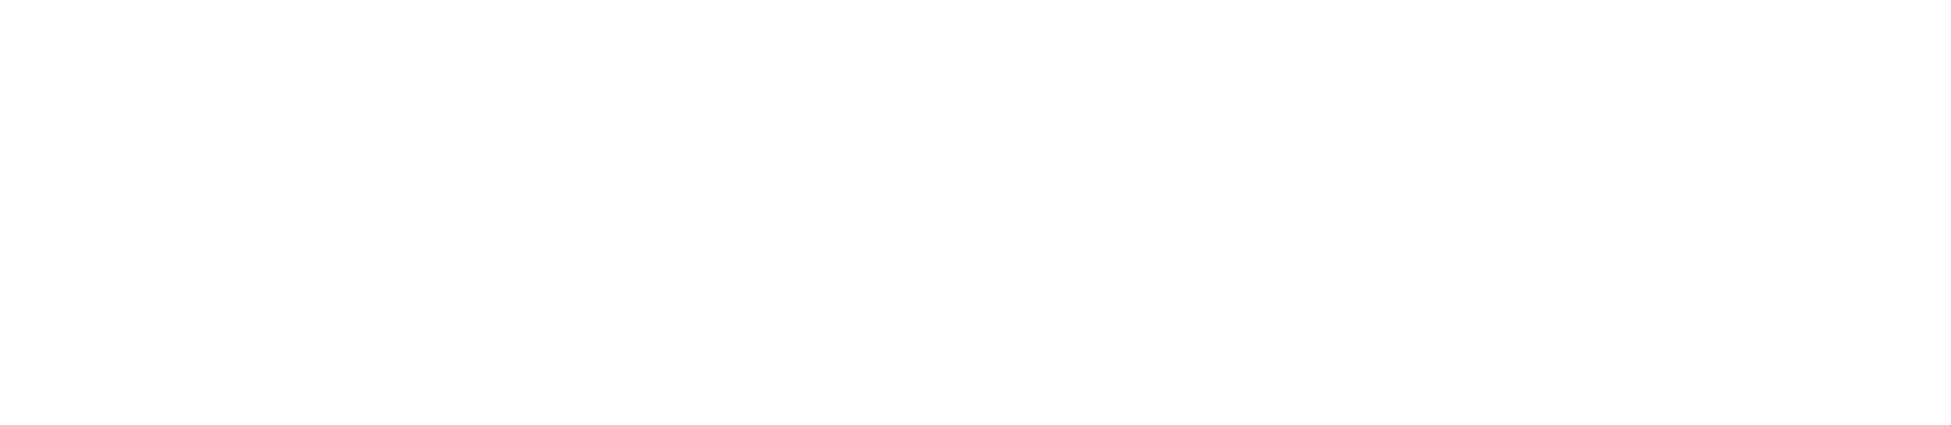 Delta Dental of Colorado Foundation logo